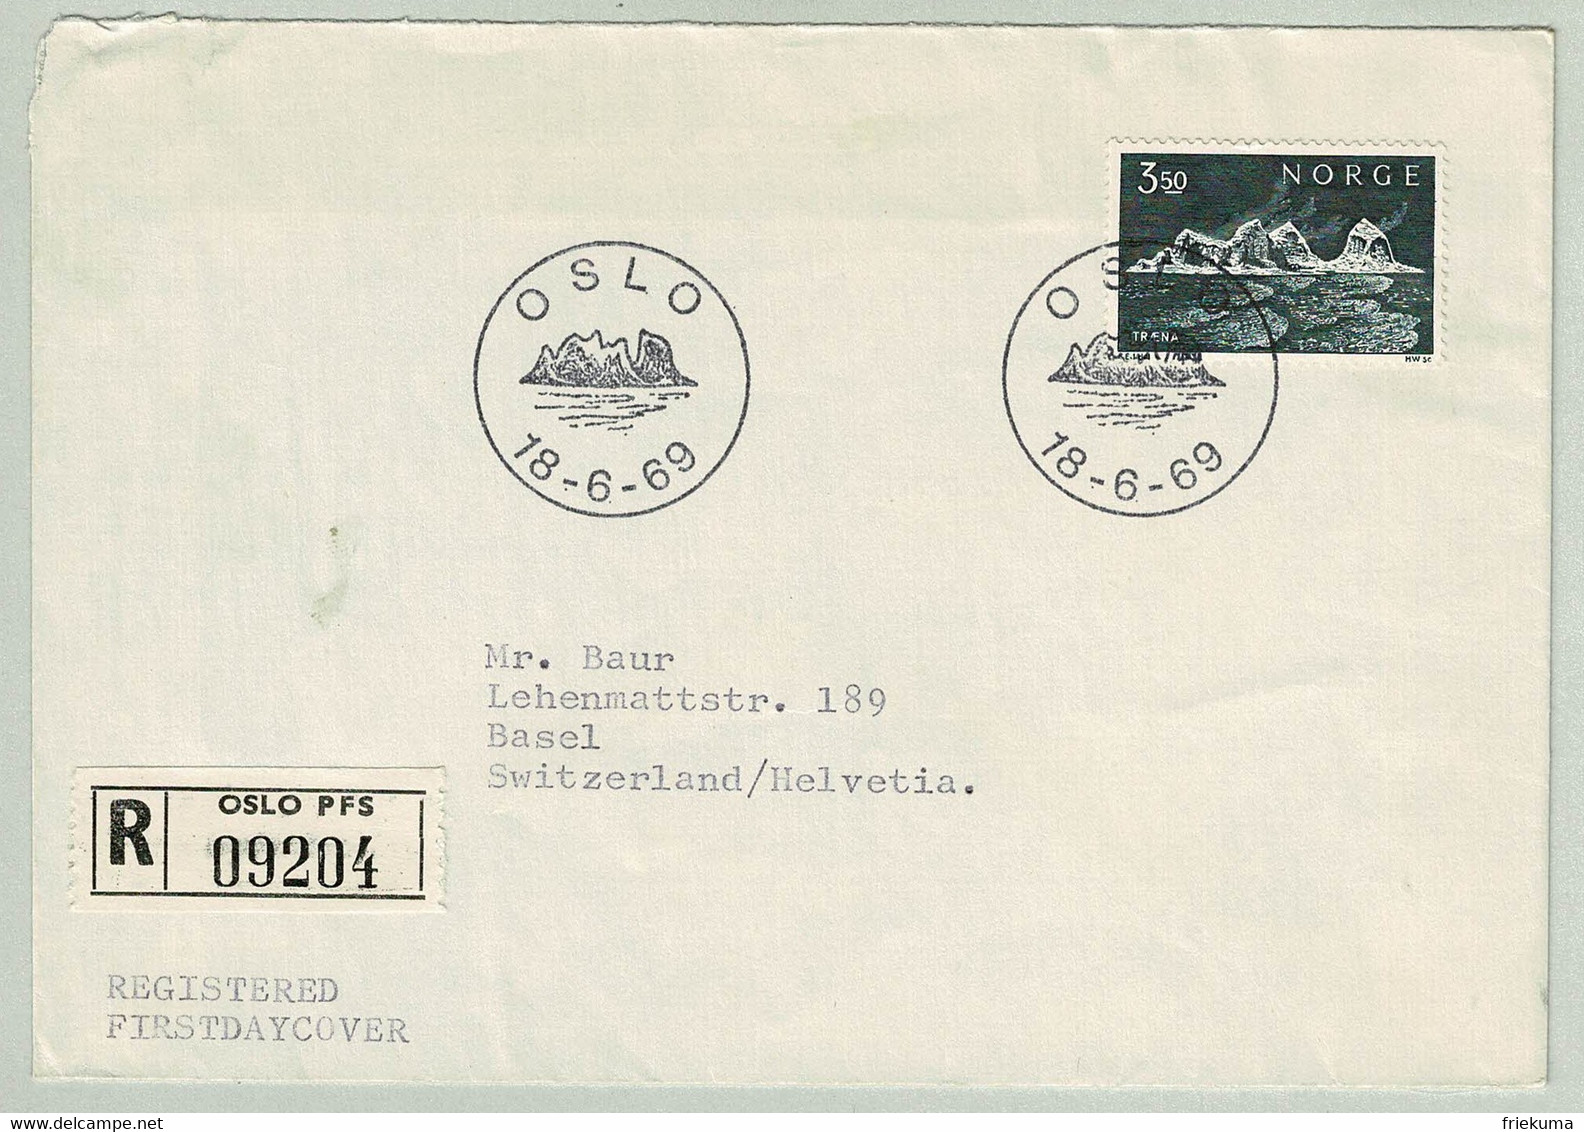 Norwegen / Norge 1969, Brief Ersttag Einschreiben Oslo - Basel (Schweiz, Insel Traena - Islands